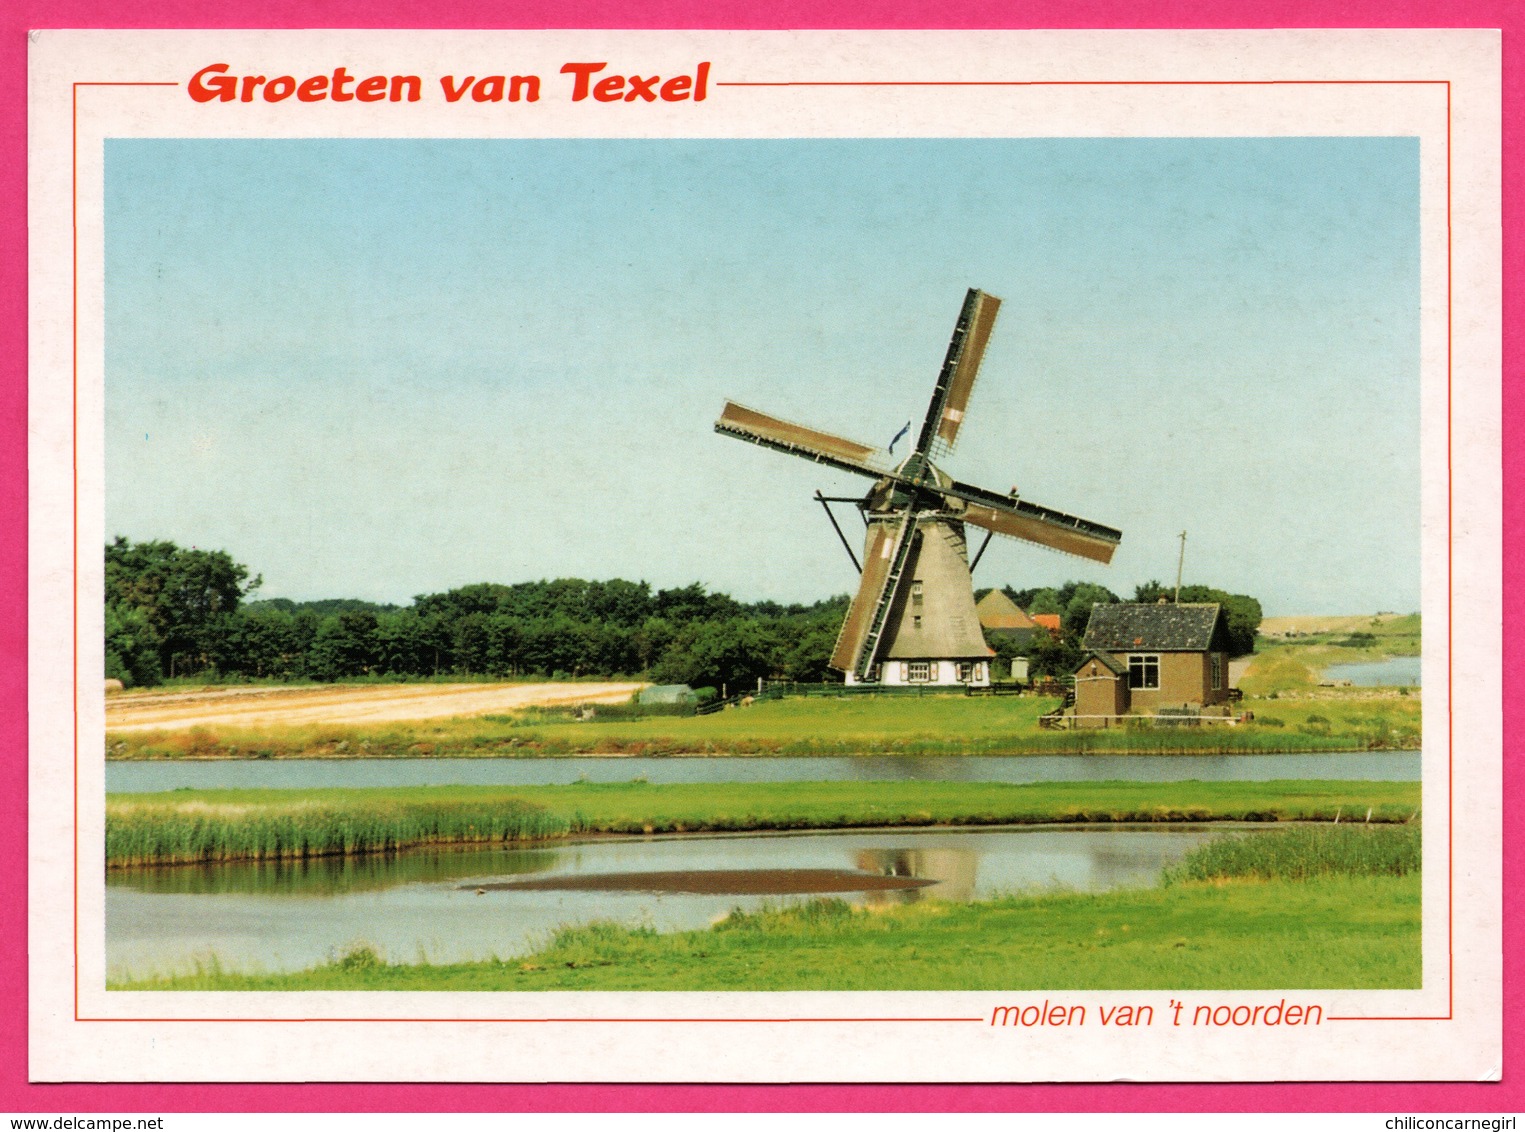 Groeten Van Texel - Molen Van 't Noorden - Moulin - Molen - STUURMAN DRUKWERK SNEEK - Foto KEES KUIP - Texel